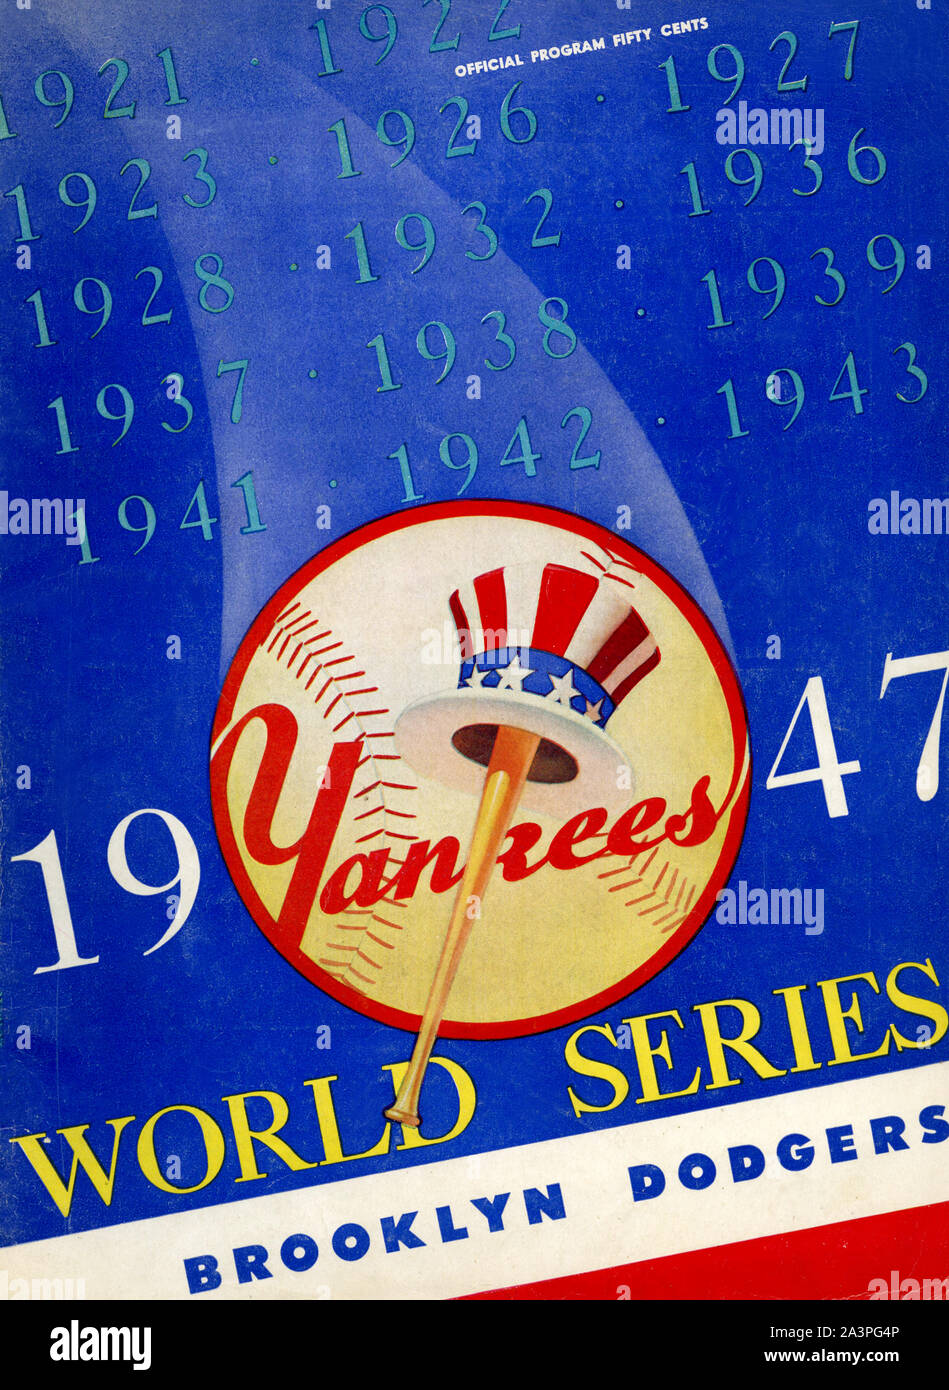 Couvrir la conception graphique pour le programme de la Ligue Majeure de Baseball 1947 World Series entre les Yankees de New York et les Dodgers de Brooklyn illustre l'emblématique logo pour les Yankees. Banque D'Images